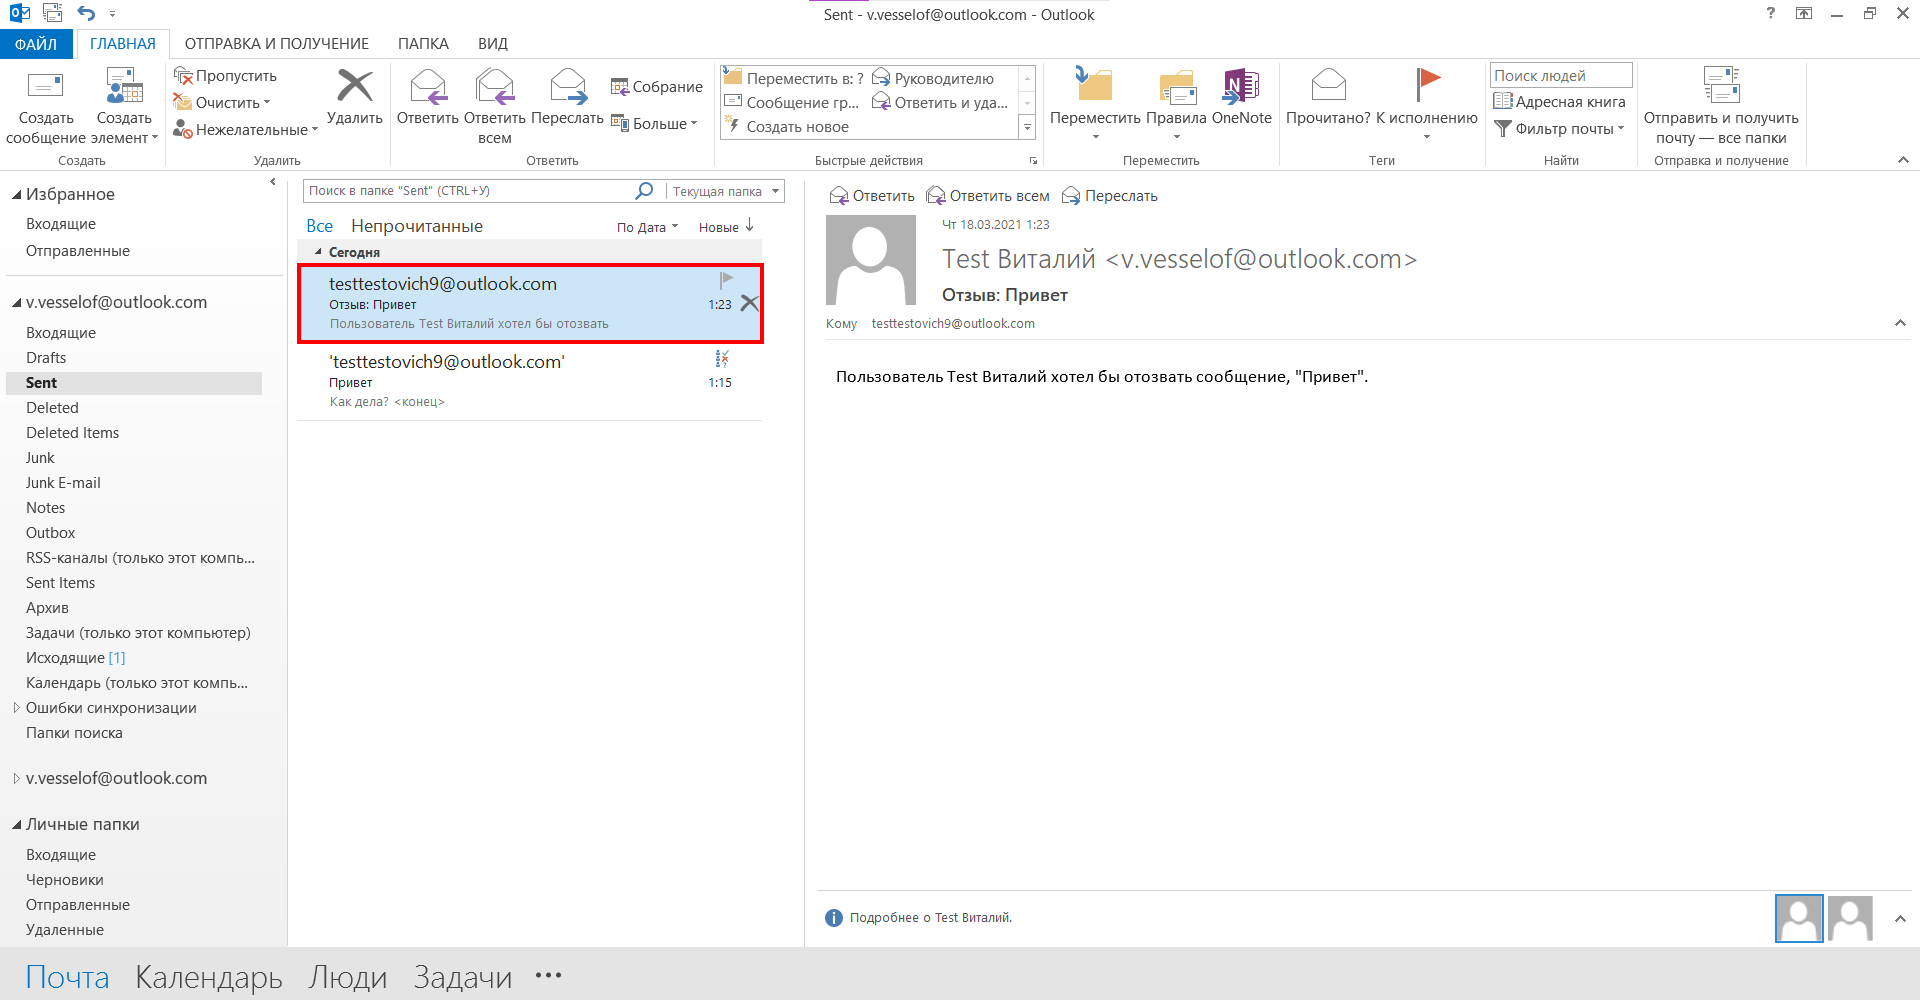  Отзыв или замена отправленного сообщения в Microsoft Outlook 2013